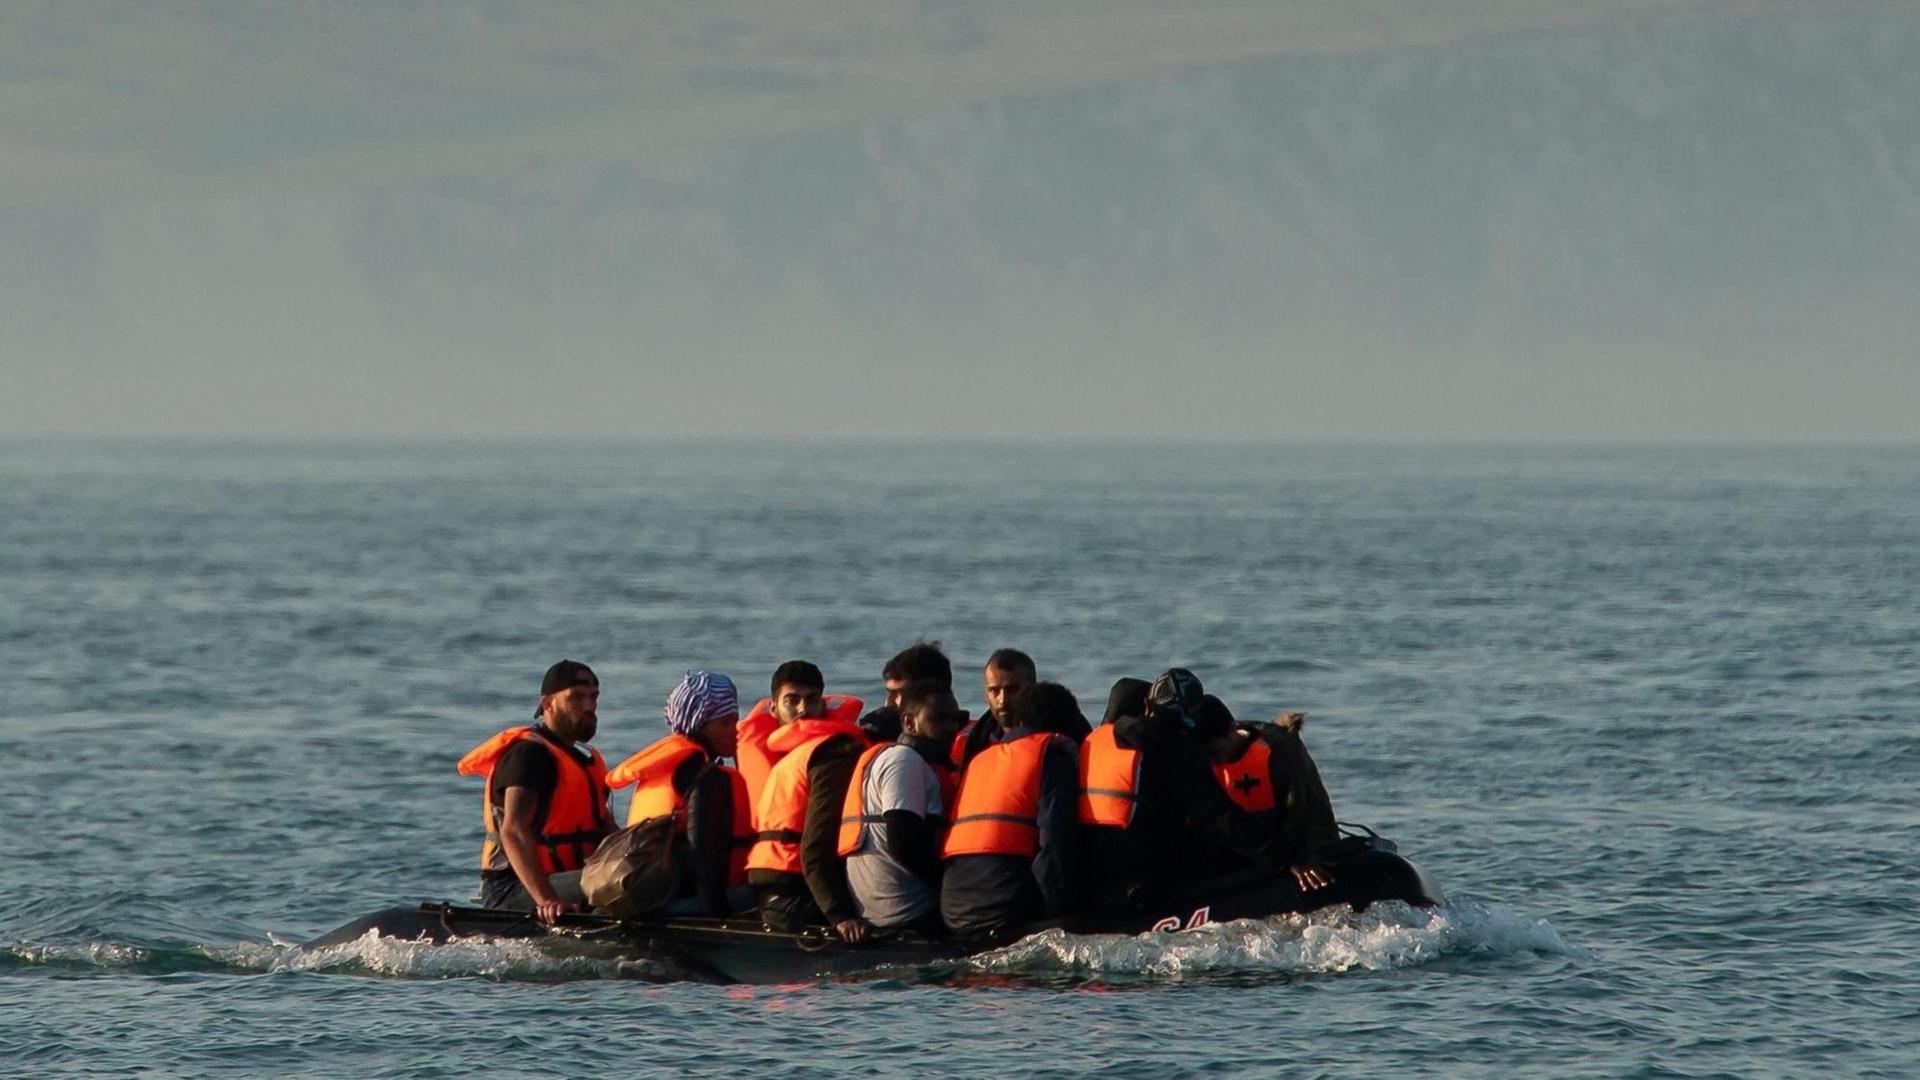 Die Flüchtlinge sitzen eng gedrängt in dem kleinen Schlauchboot, das aus der Ferne fotografiert ist. Sie tragen Schwimmwesten.